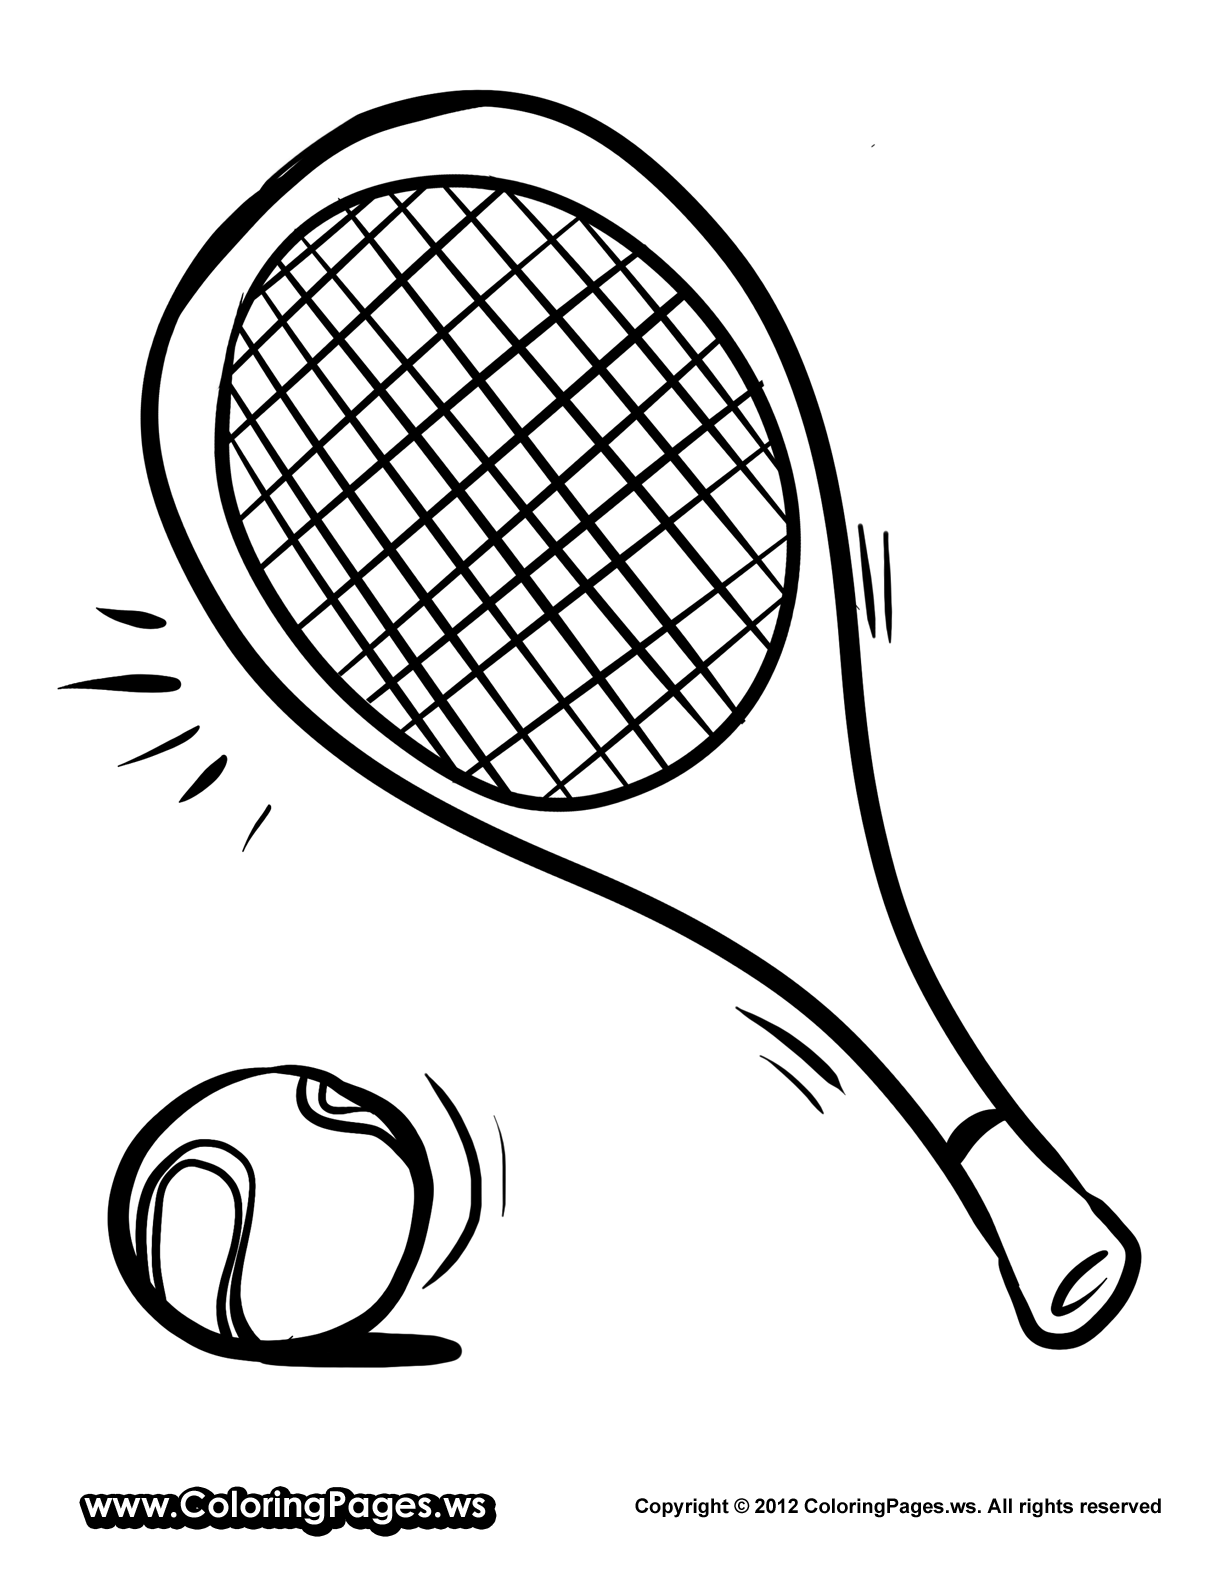 Image #17612 - Coloriage tennis gratuit